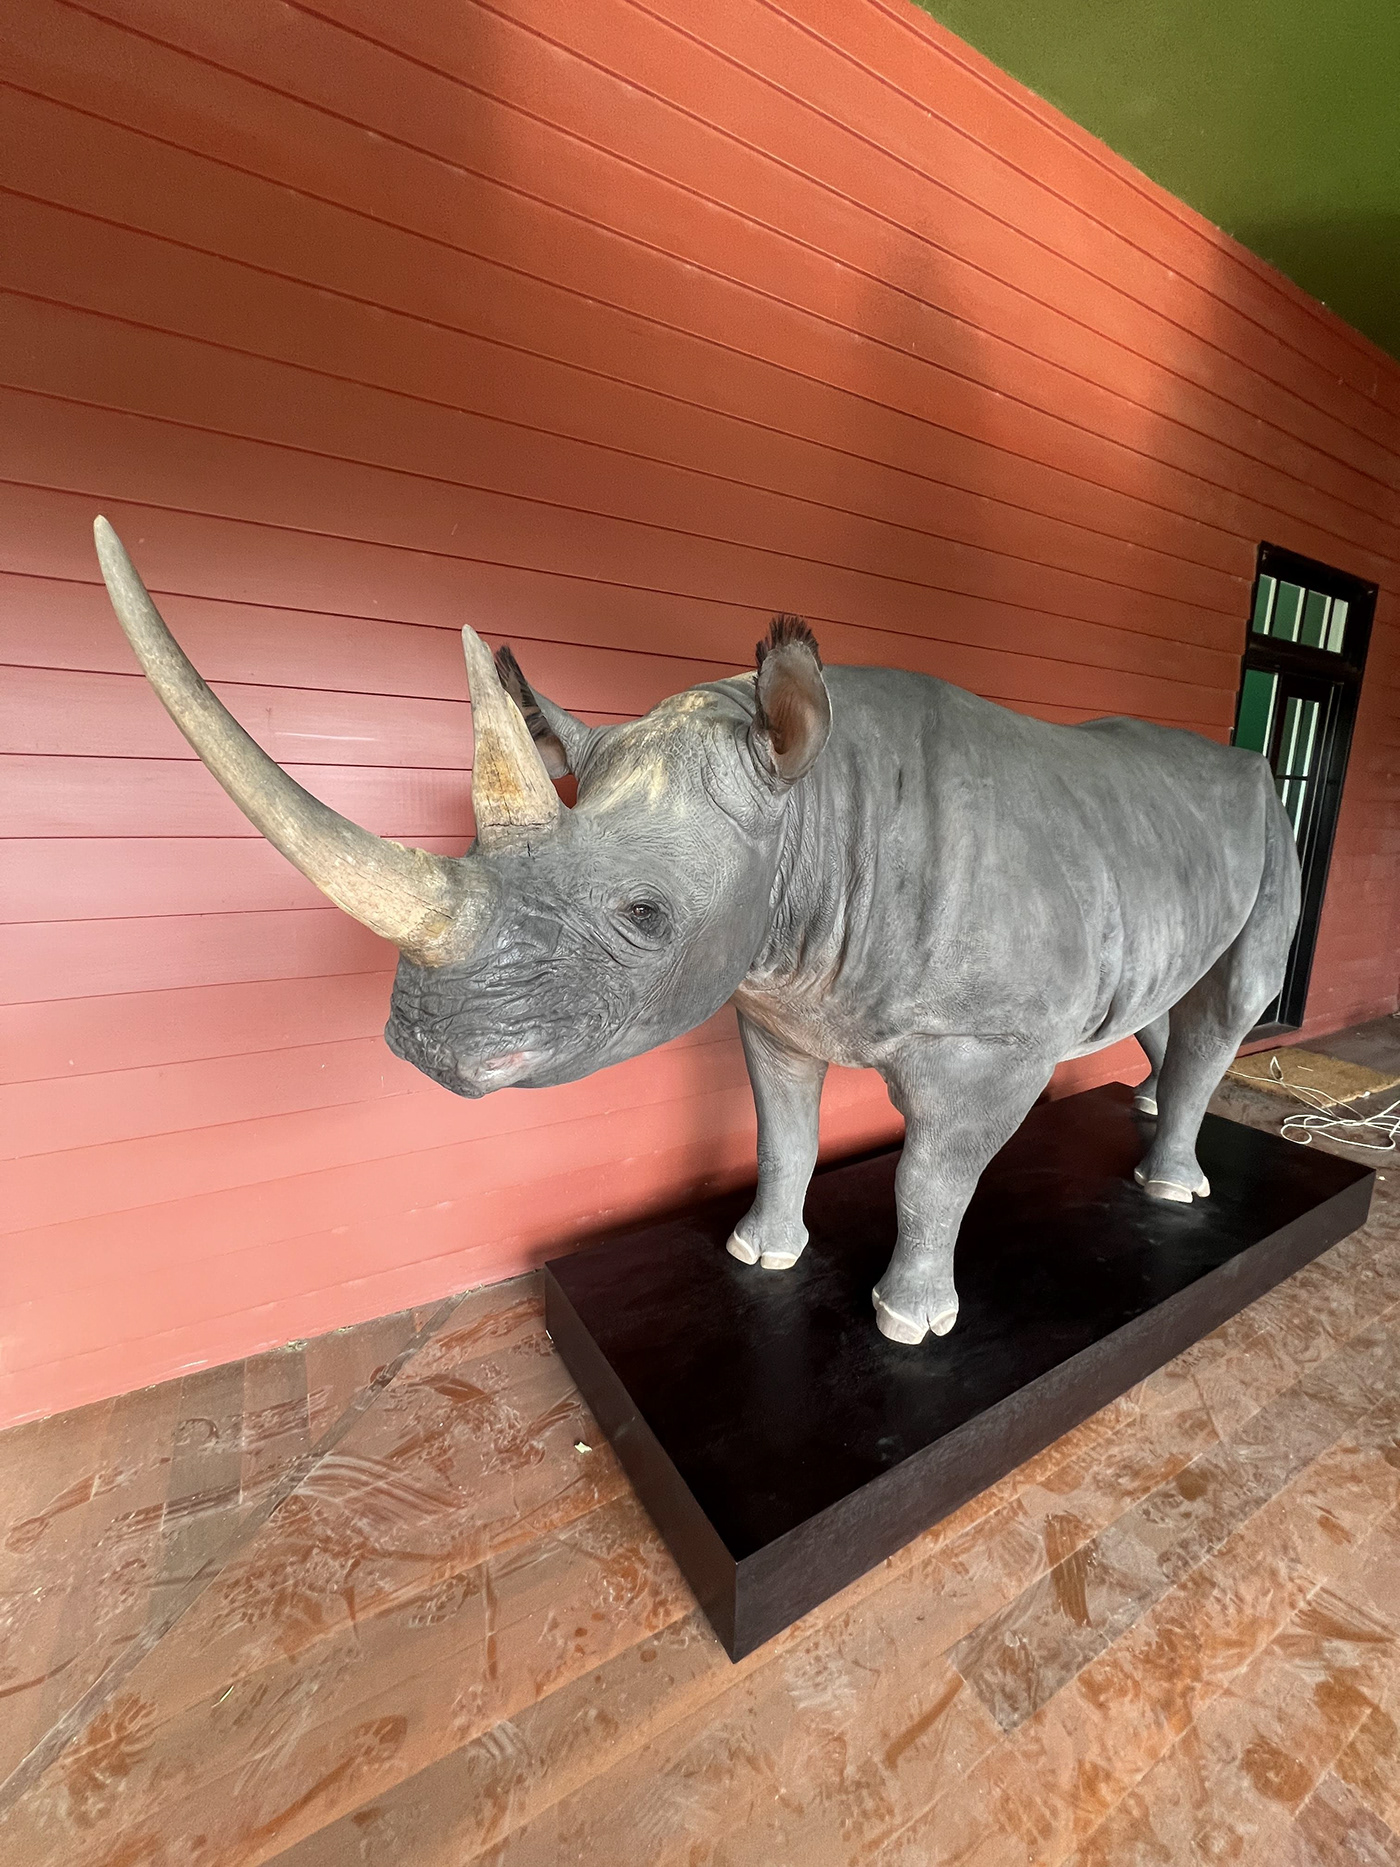 Rhino finishing taxidermy